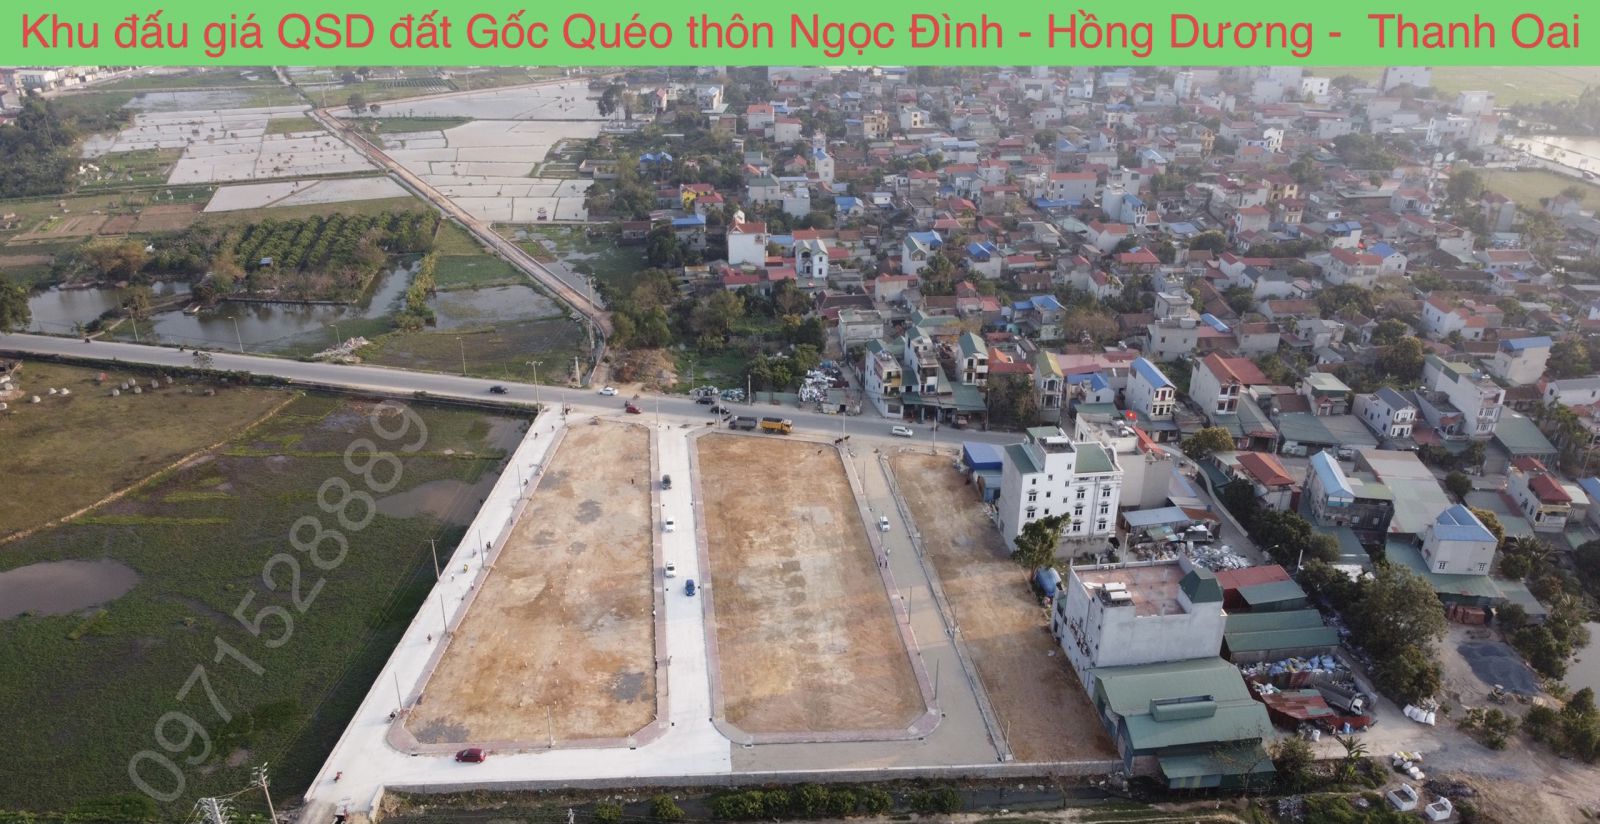 Ha tầng đất đấu giá QSD đất Gốc Quéo xã Hồng Dương huyện Thanh Oai